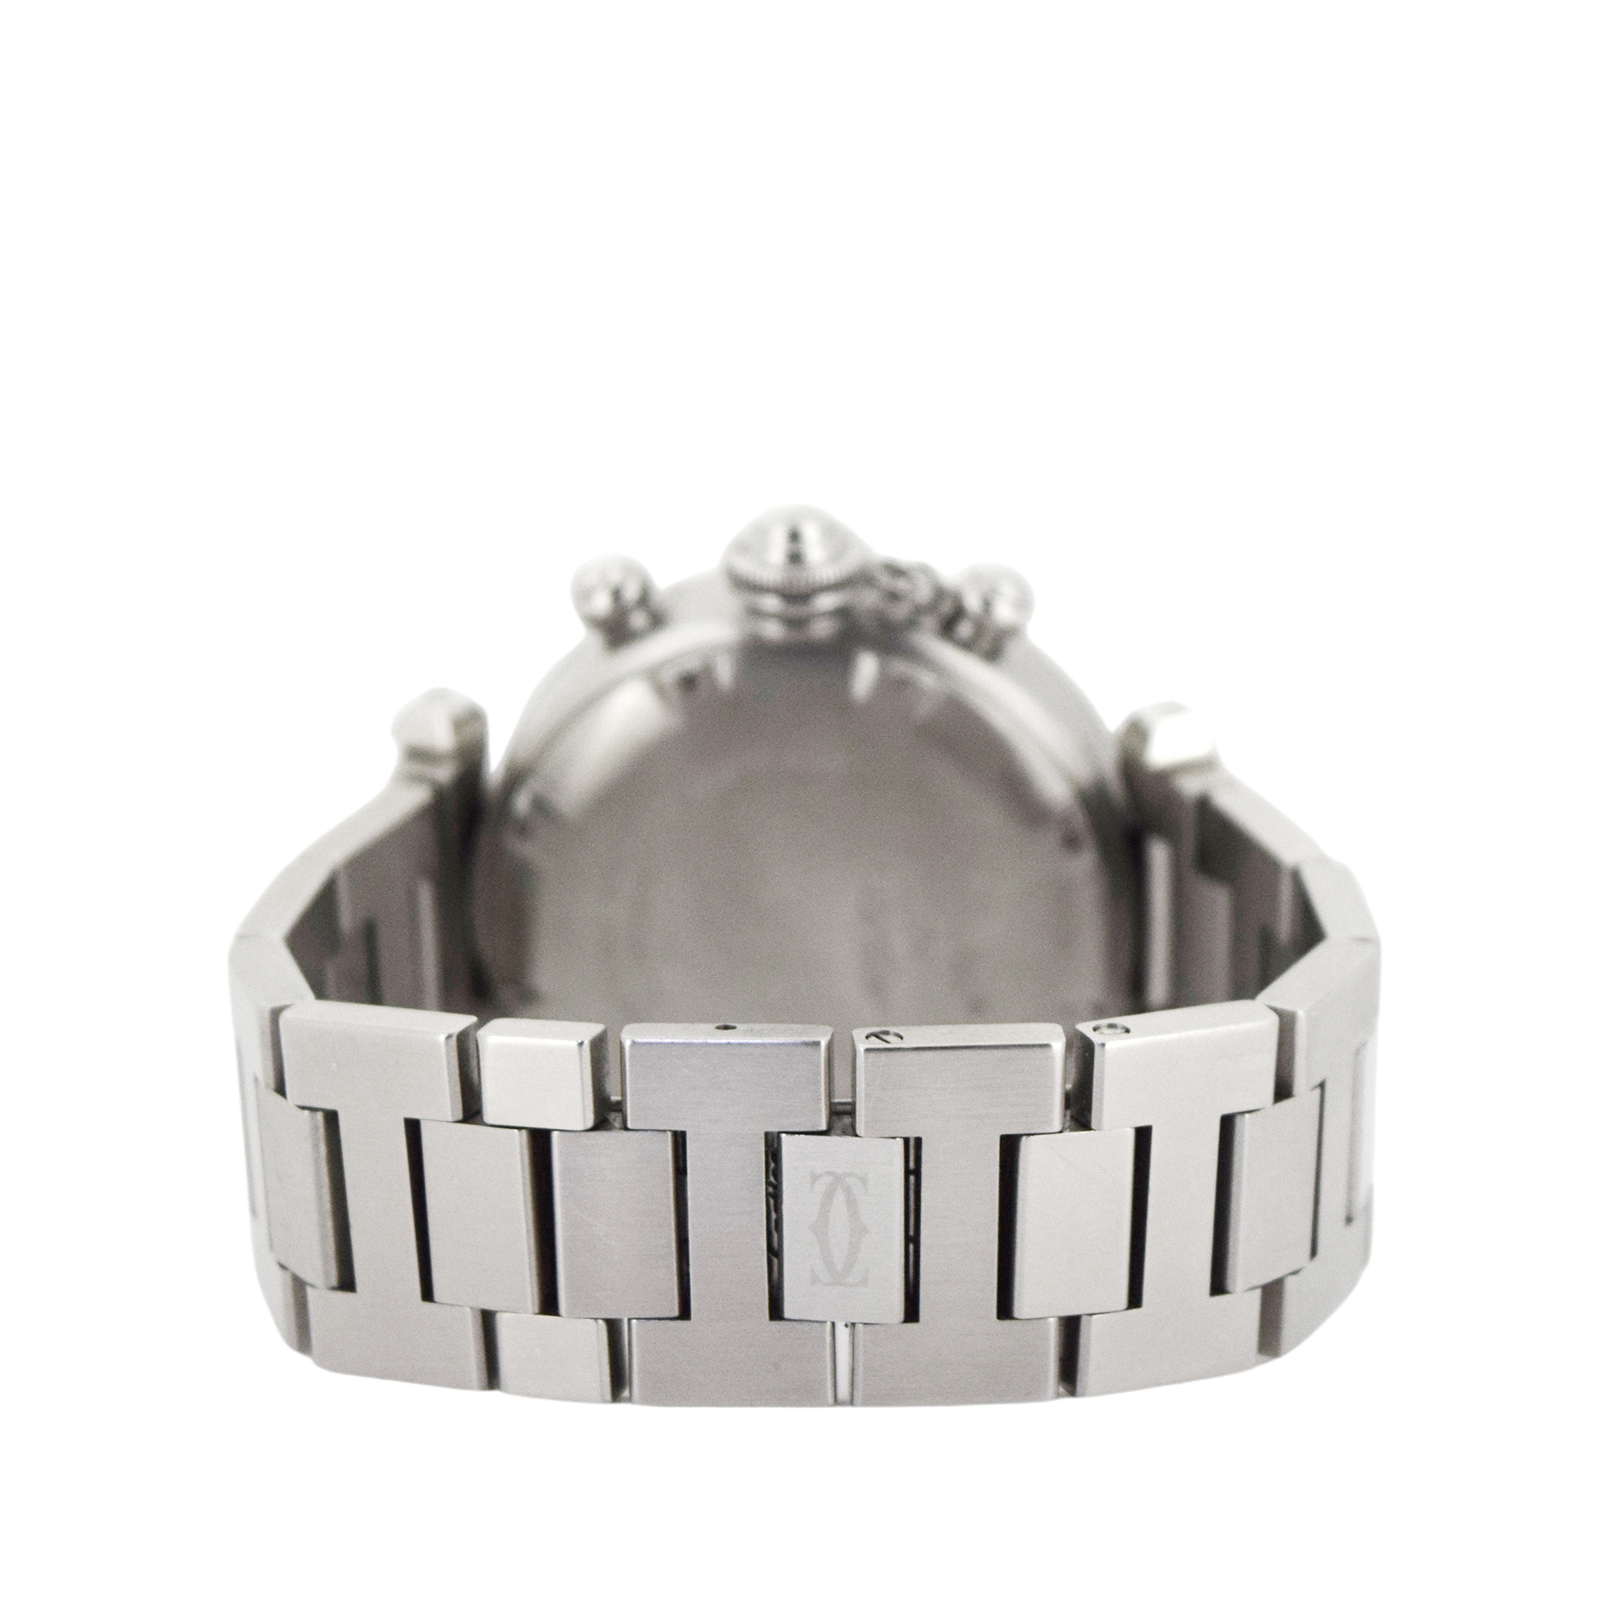 Cartier カルティエ  パシャC クロノ  W31039M7  ボーイズ ユニセックス  レディース 腕時計